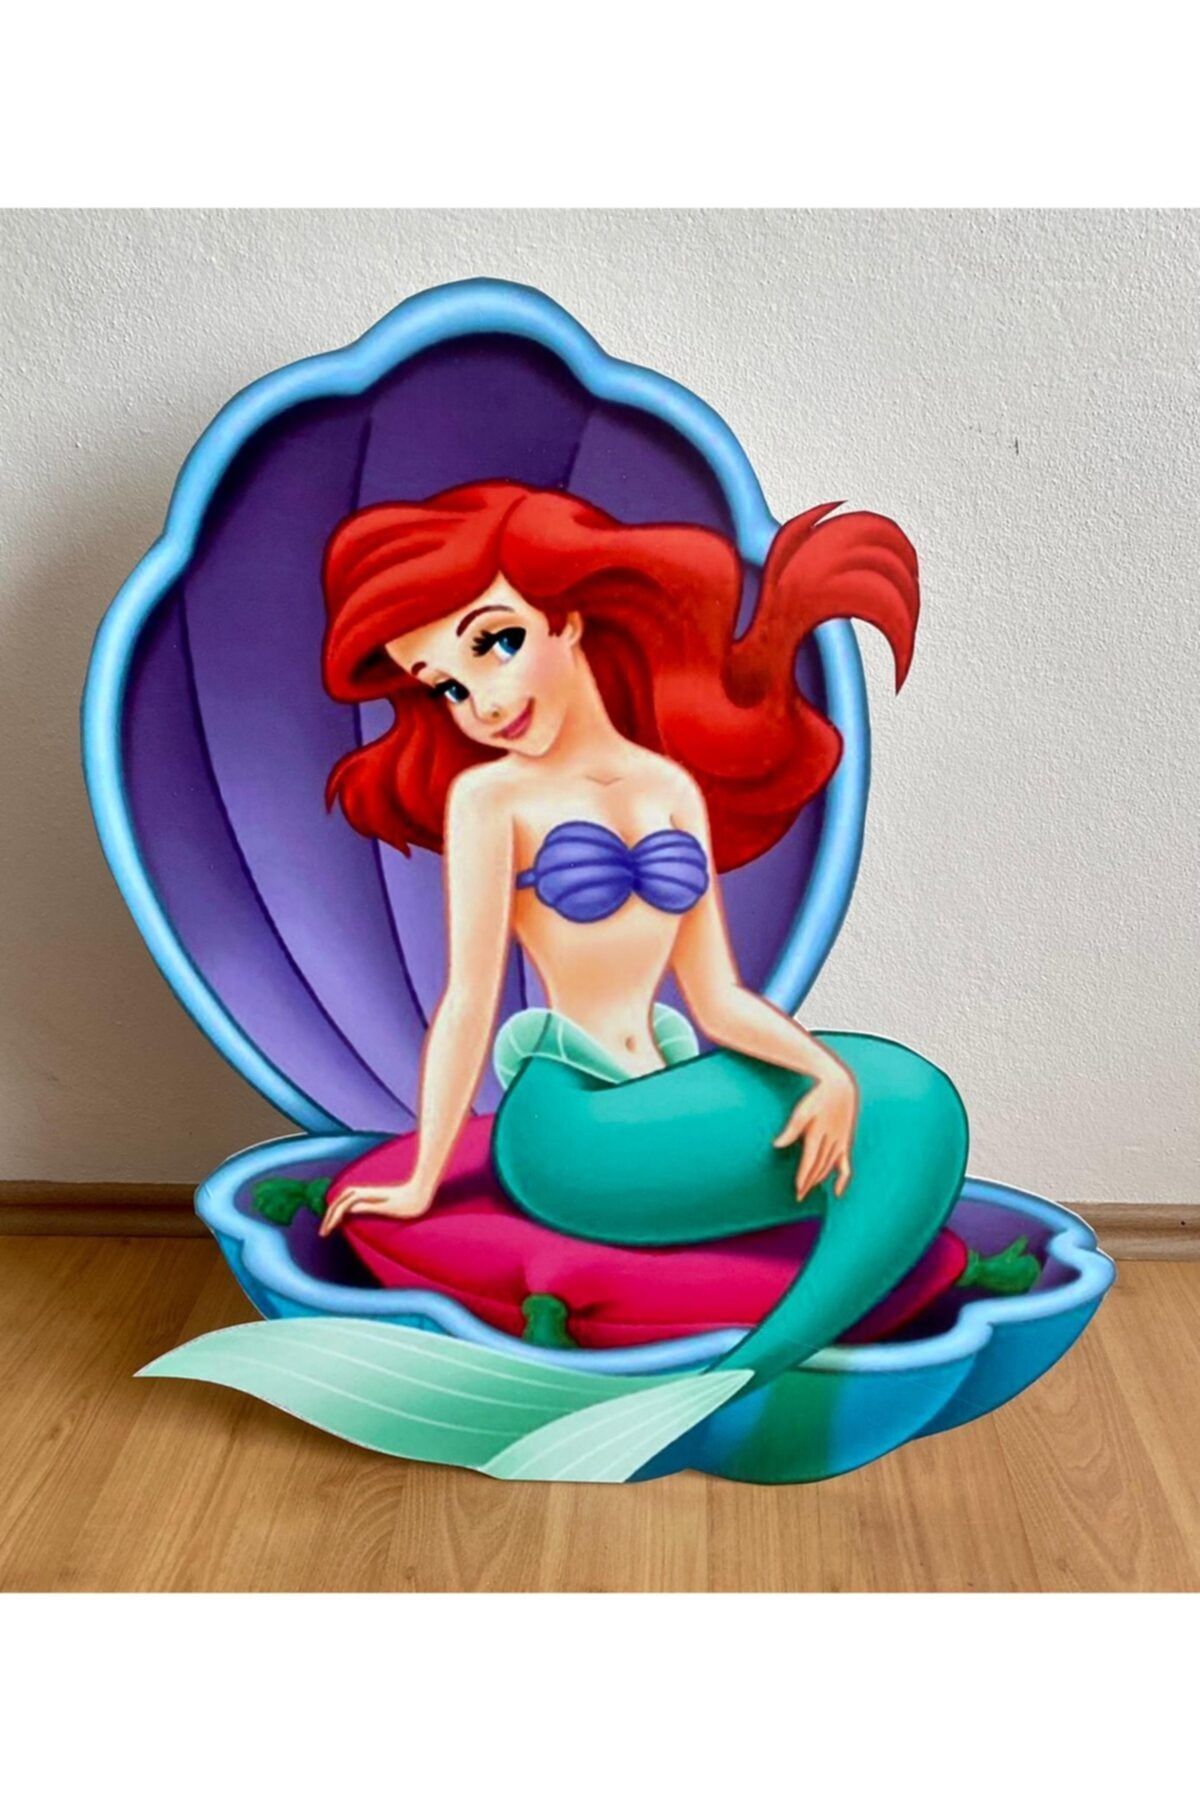 Okarttasarım Ariel Prenses (deniz Kızı) Masaönü Ayaklı Pano